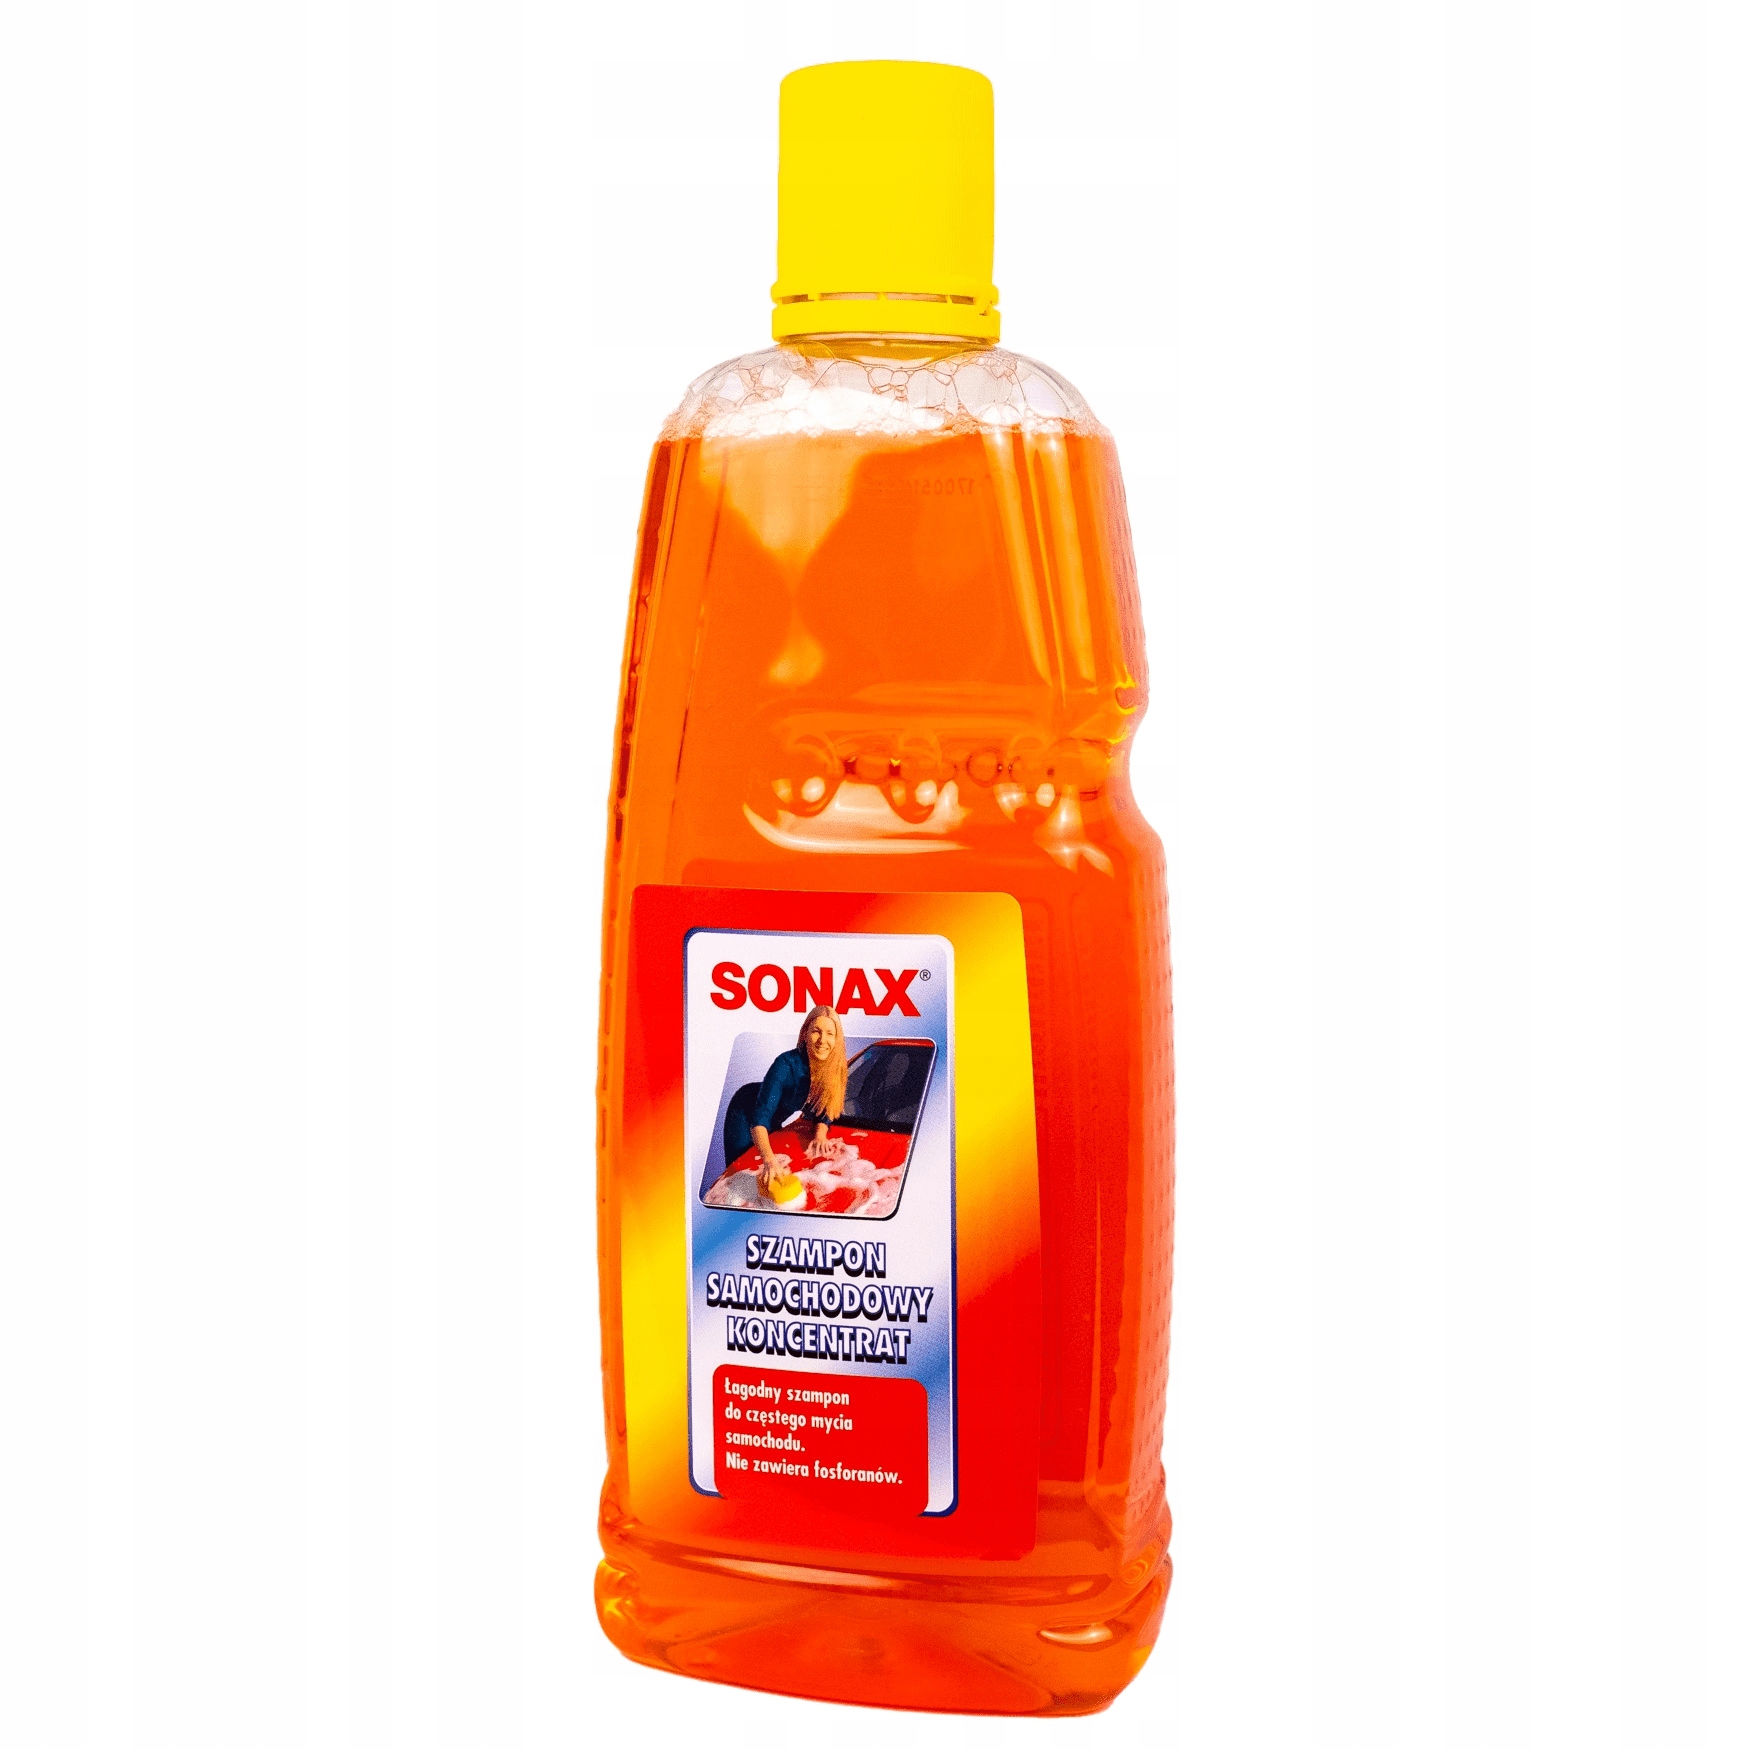 sonax szampon nabłyszczający koncentrat 5l cena